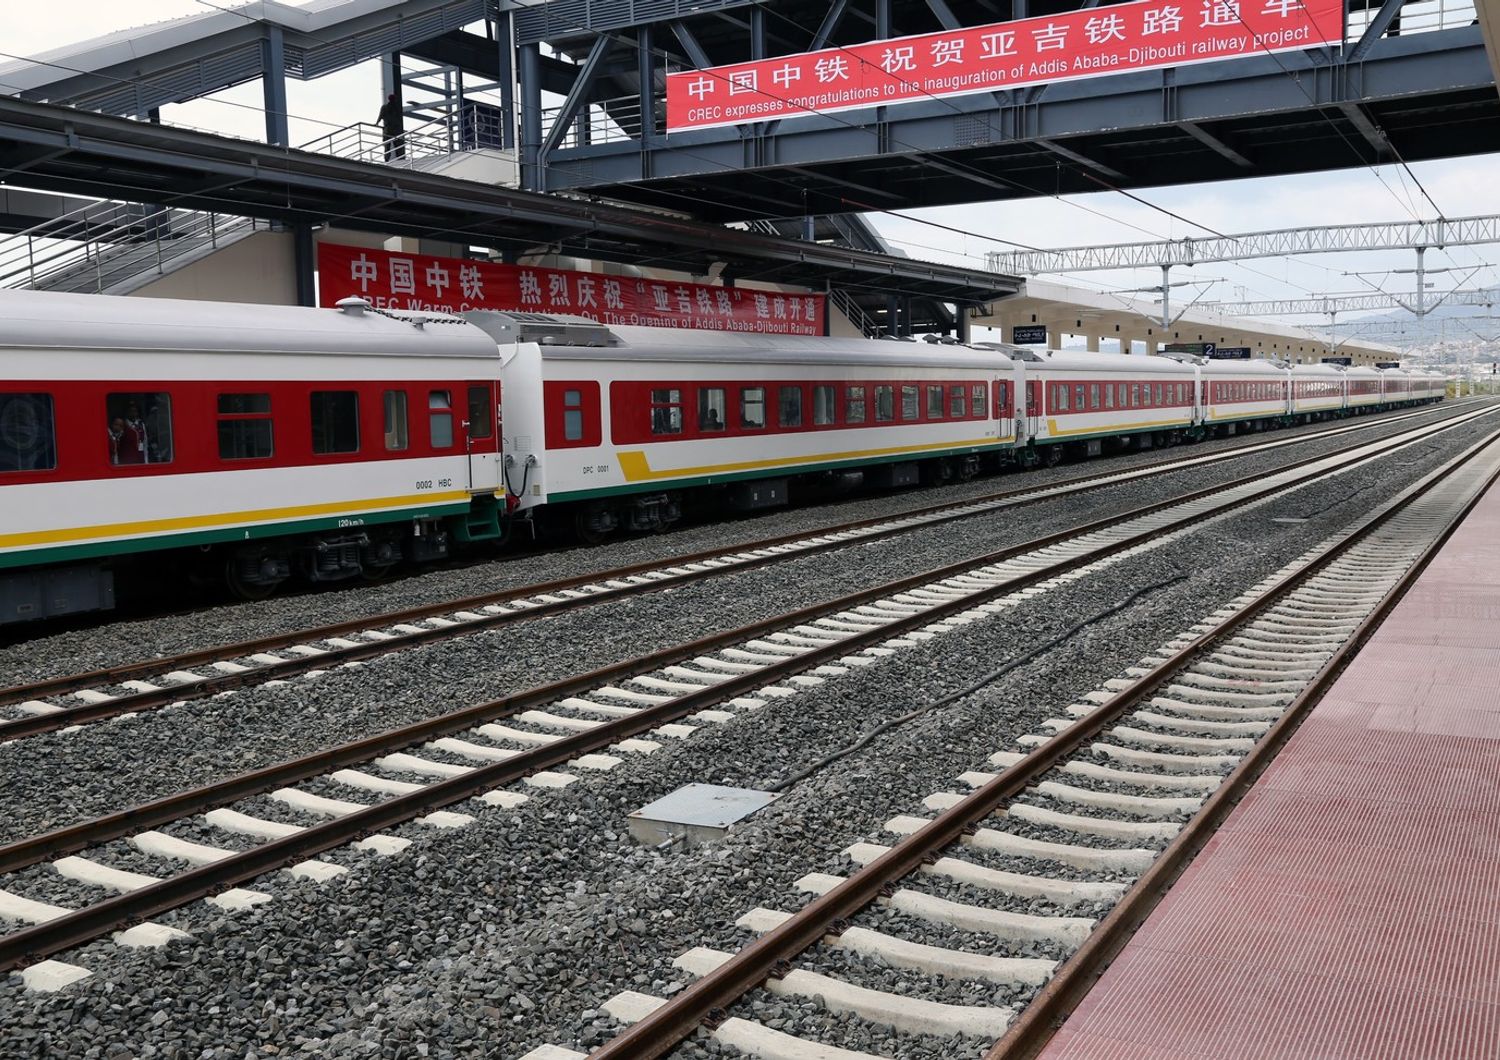 ferrovia da Addis Abeba al porto di Gibuti, realizzata da due gruppi cinesi, China Railway Engineering Corporation e China Civil Engineering Construction Corporation (Afp)